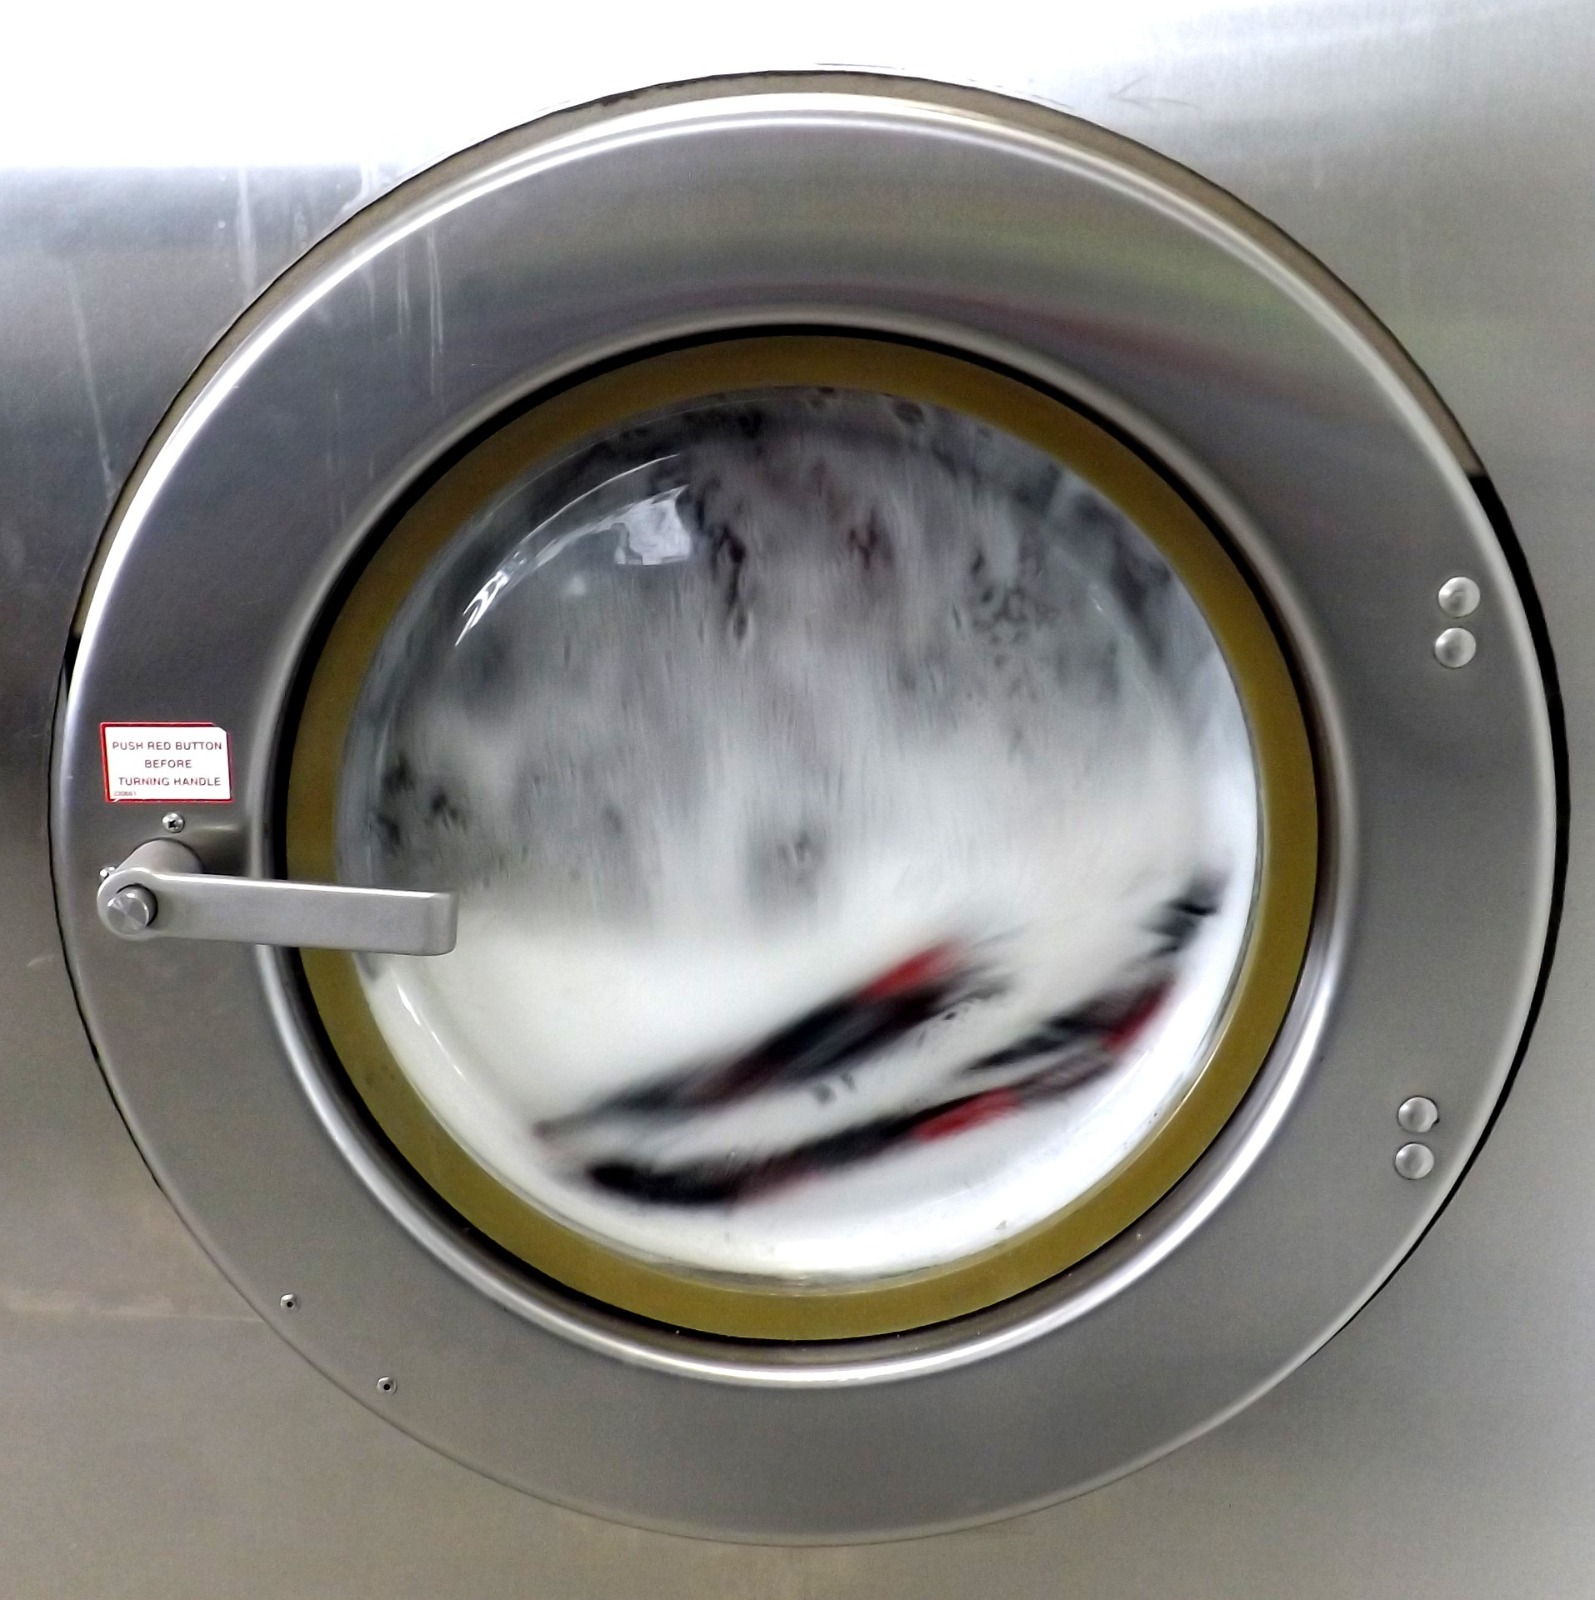 lavadora tambor con espuma